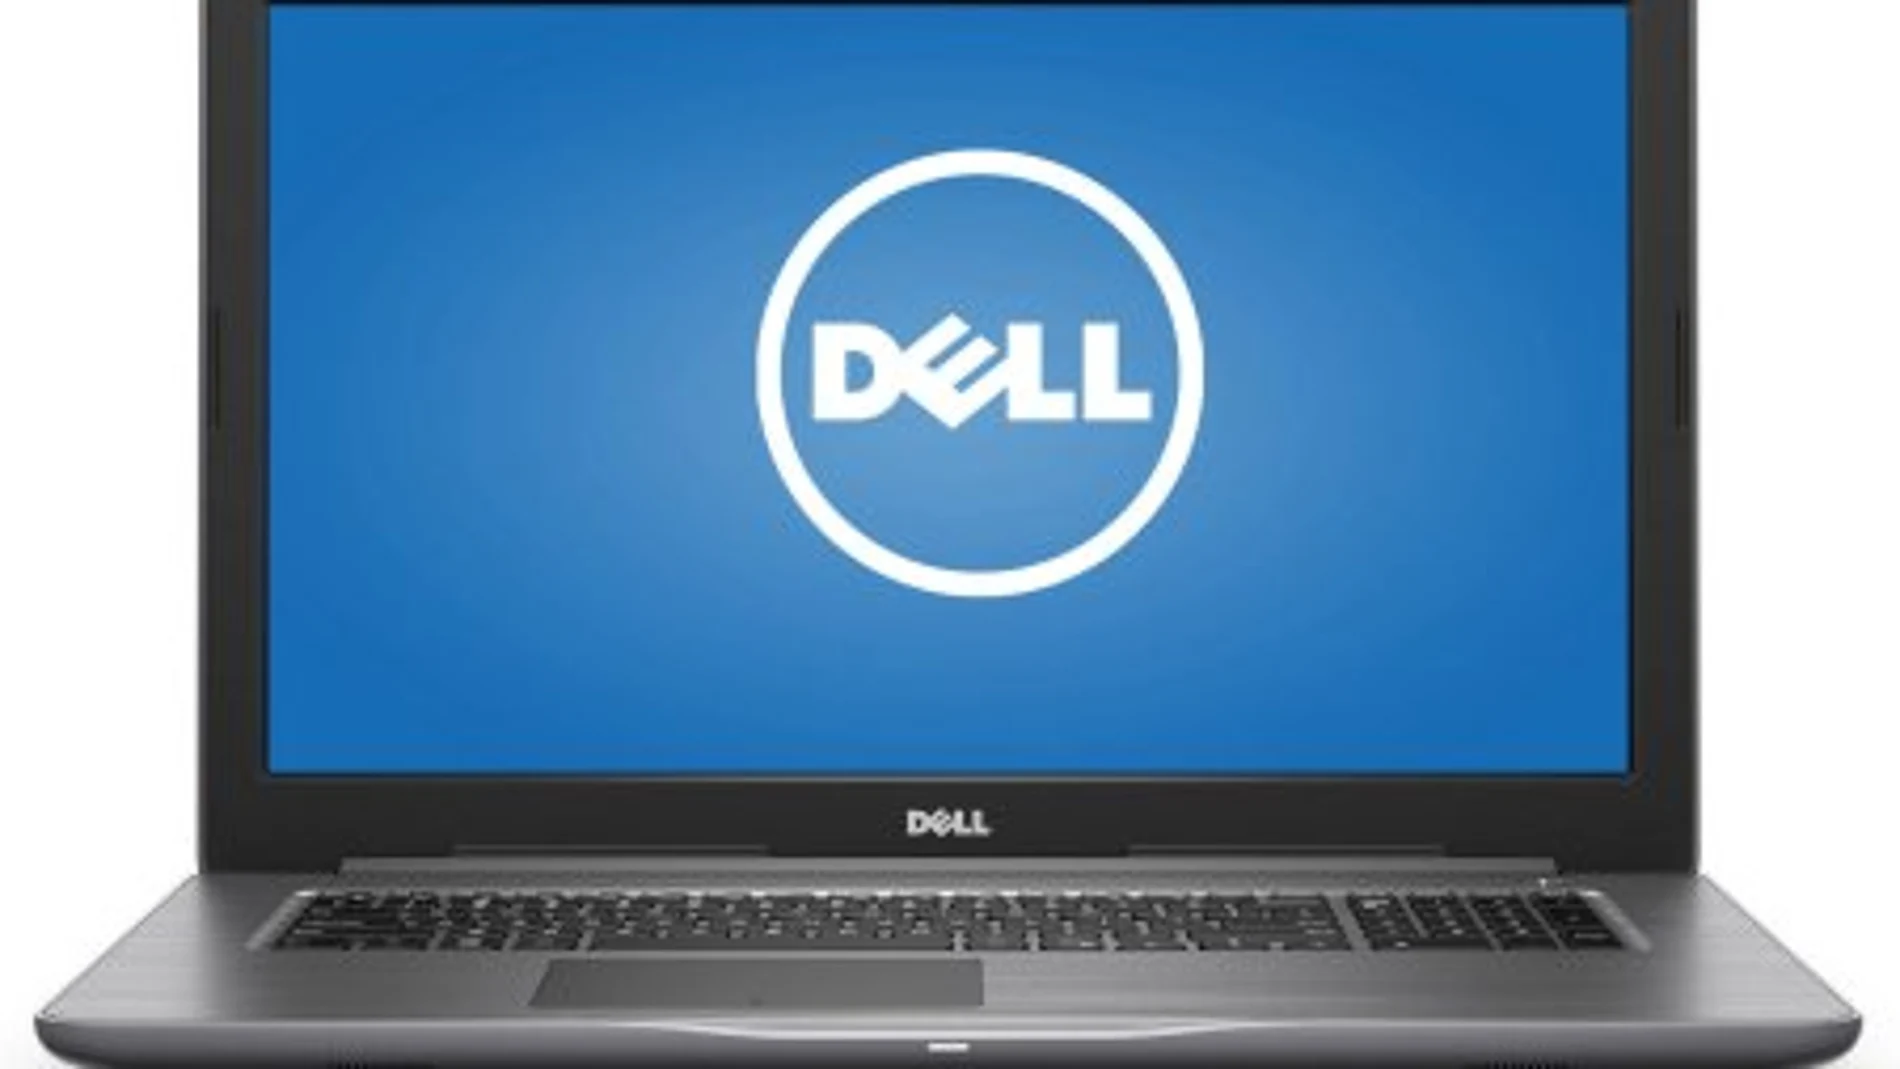 Dell ha advertido del intento de robo de datos de clientes